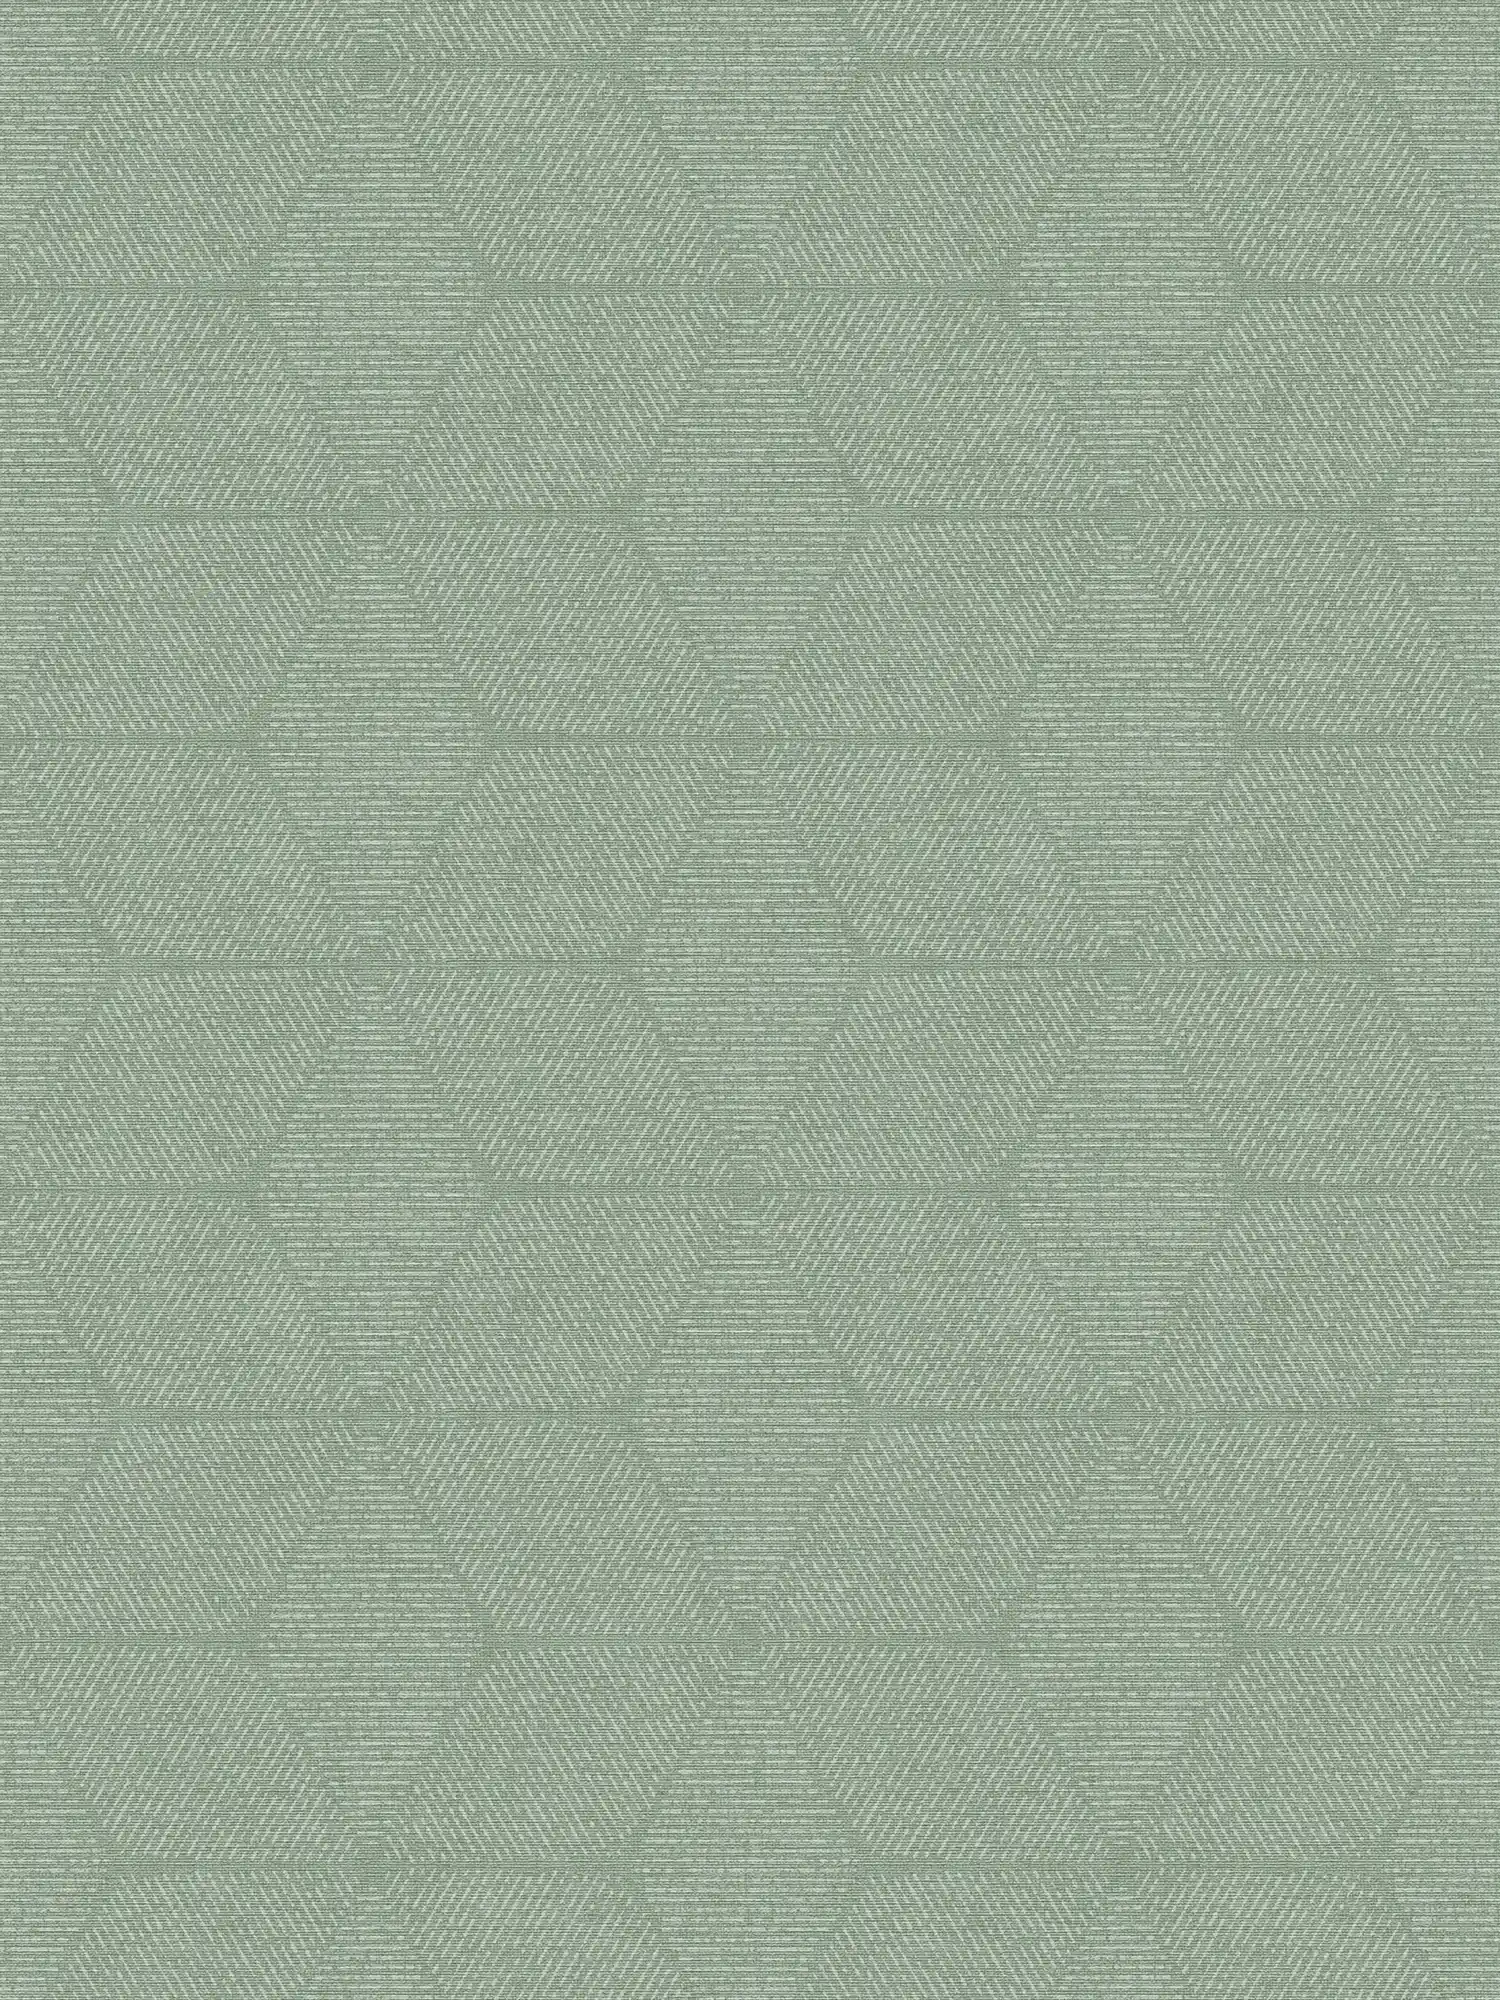 Vliestapete im floralen Muster – Grün, Weiß
